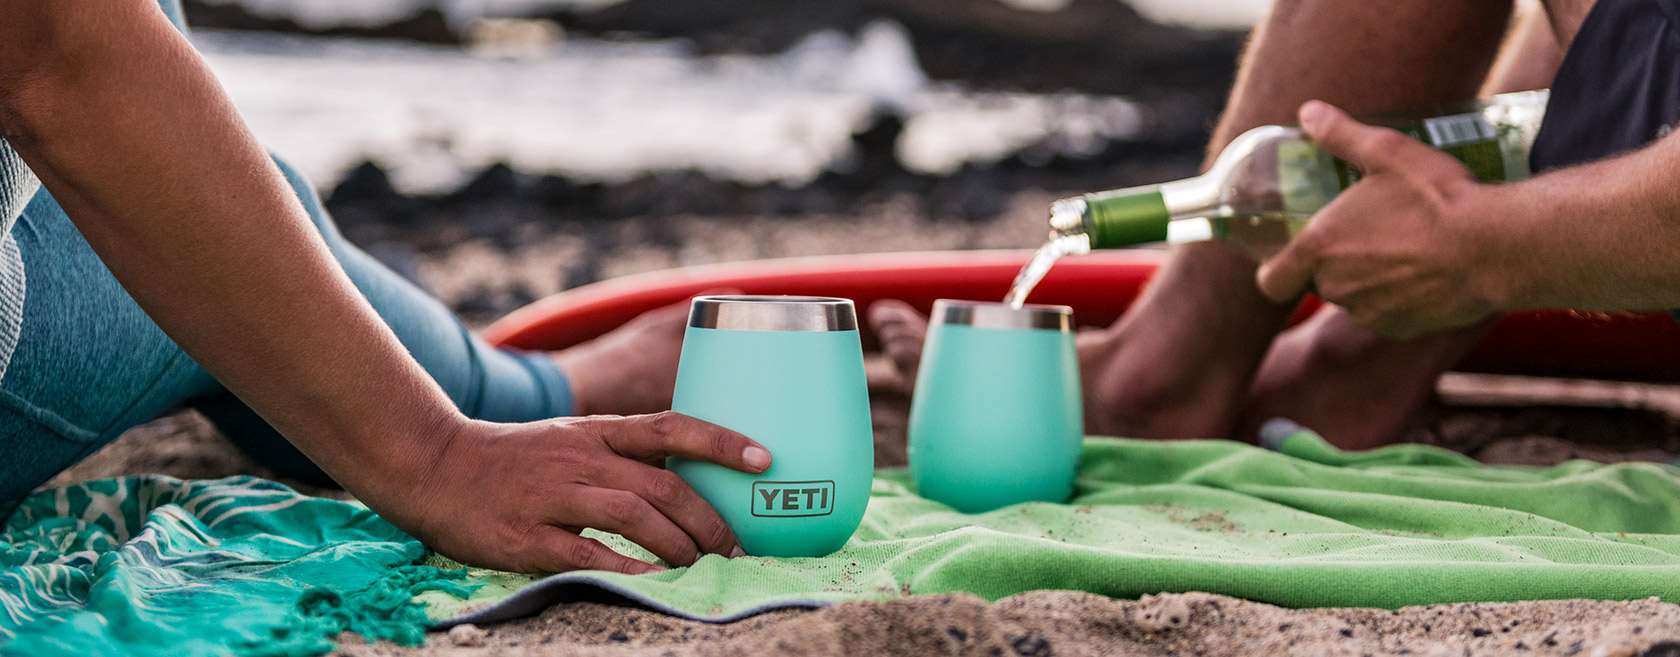 yeti-wine-glass